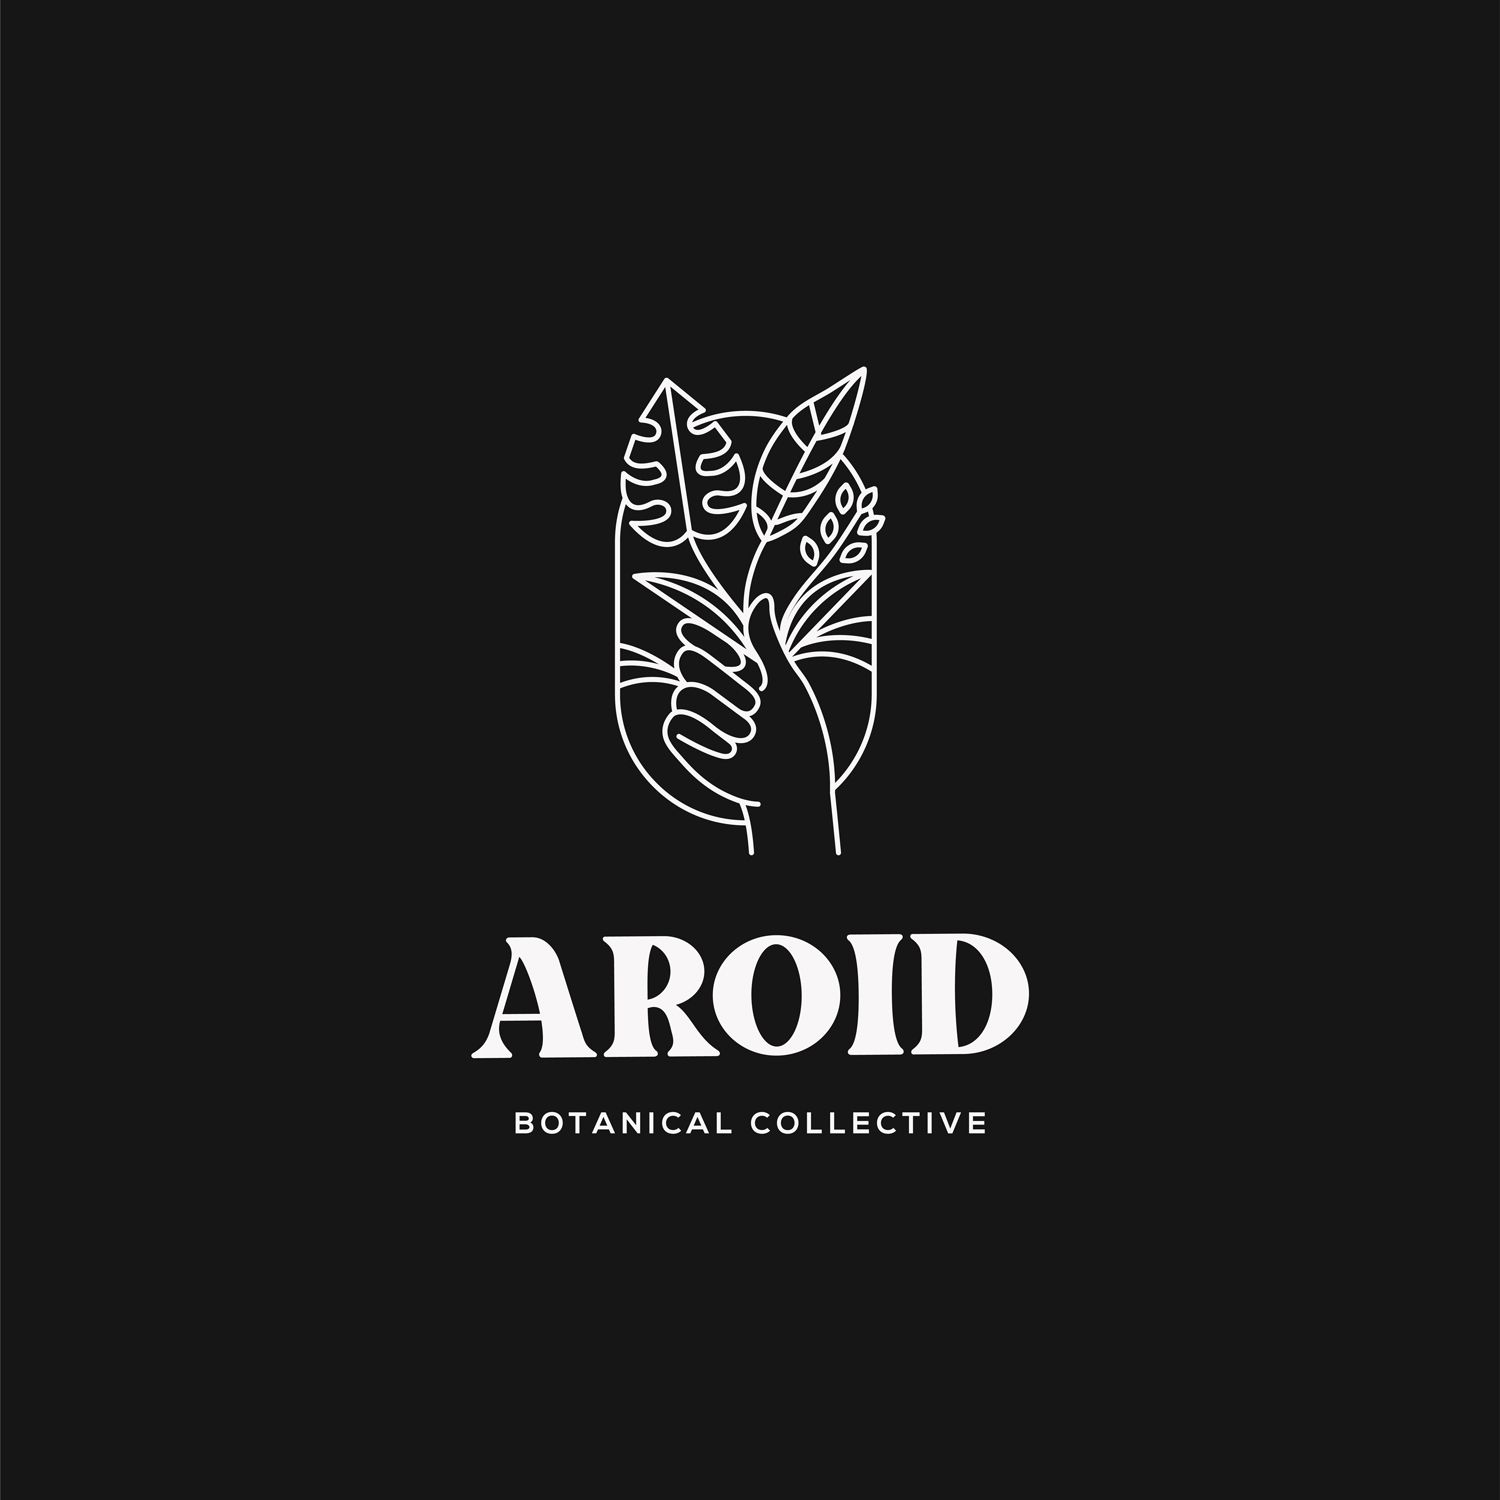 Logo Collection / Branding / Design